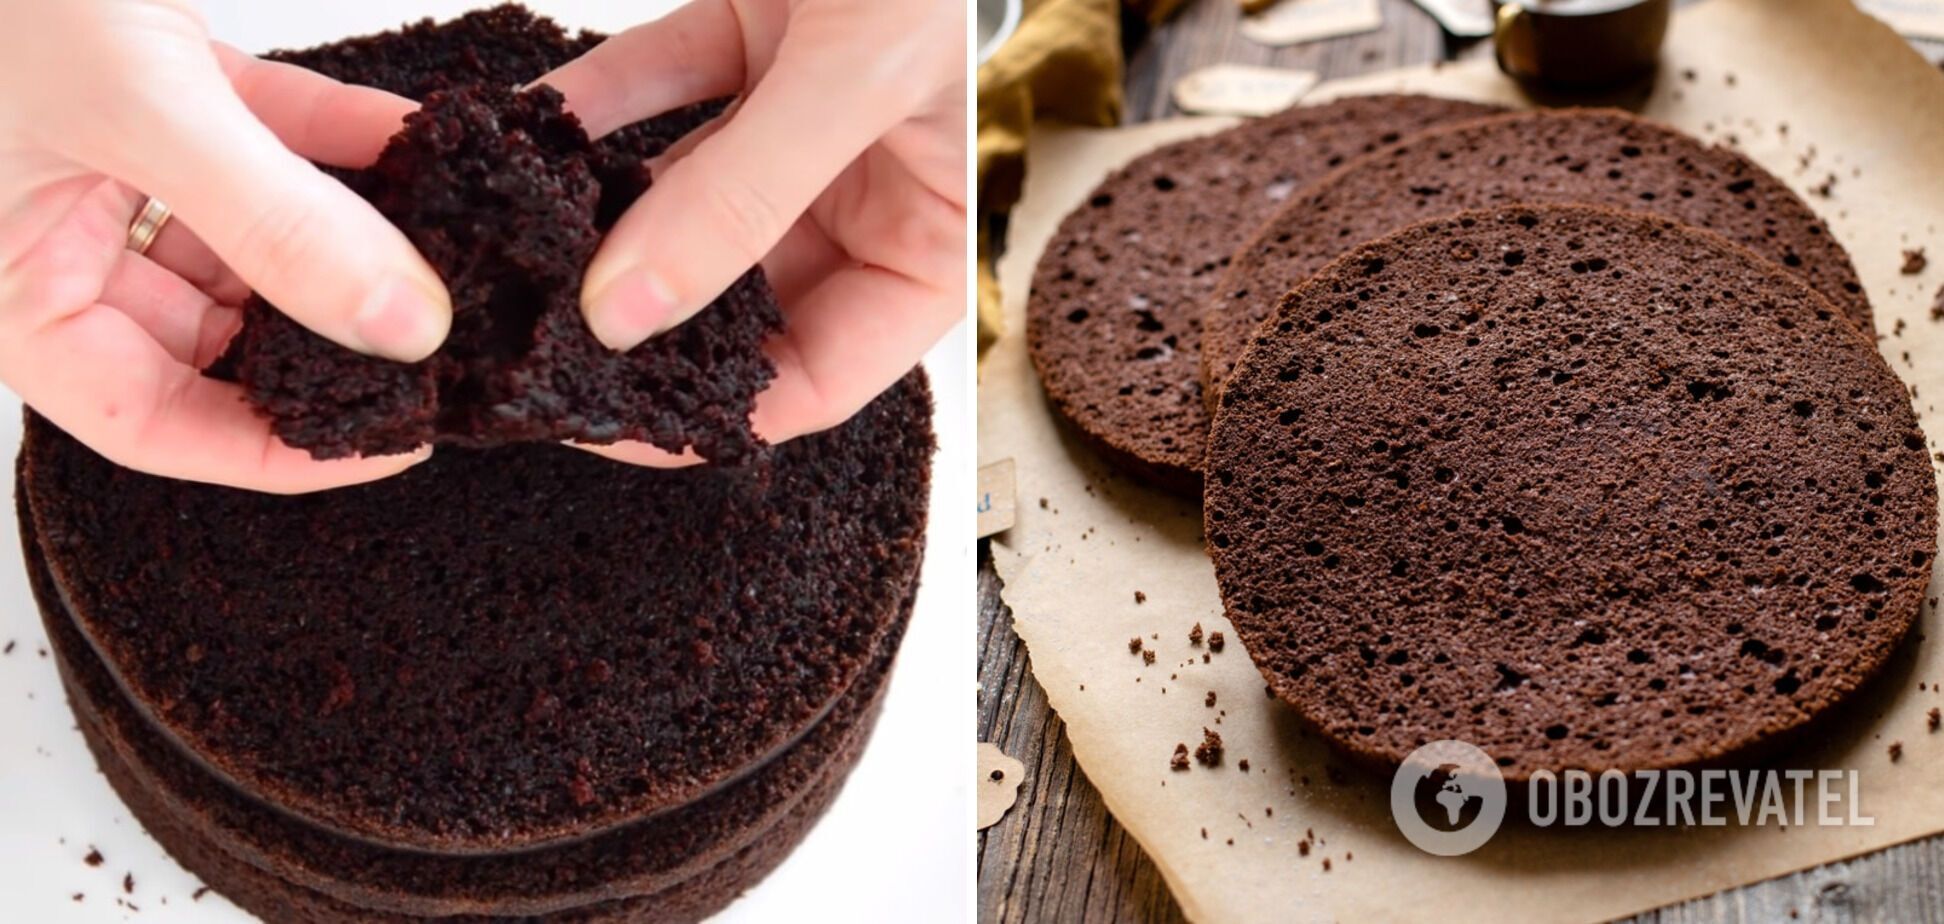 Chocolate sponge cakes